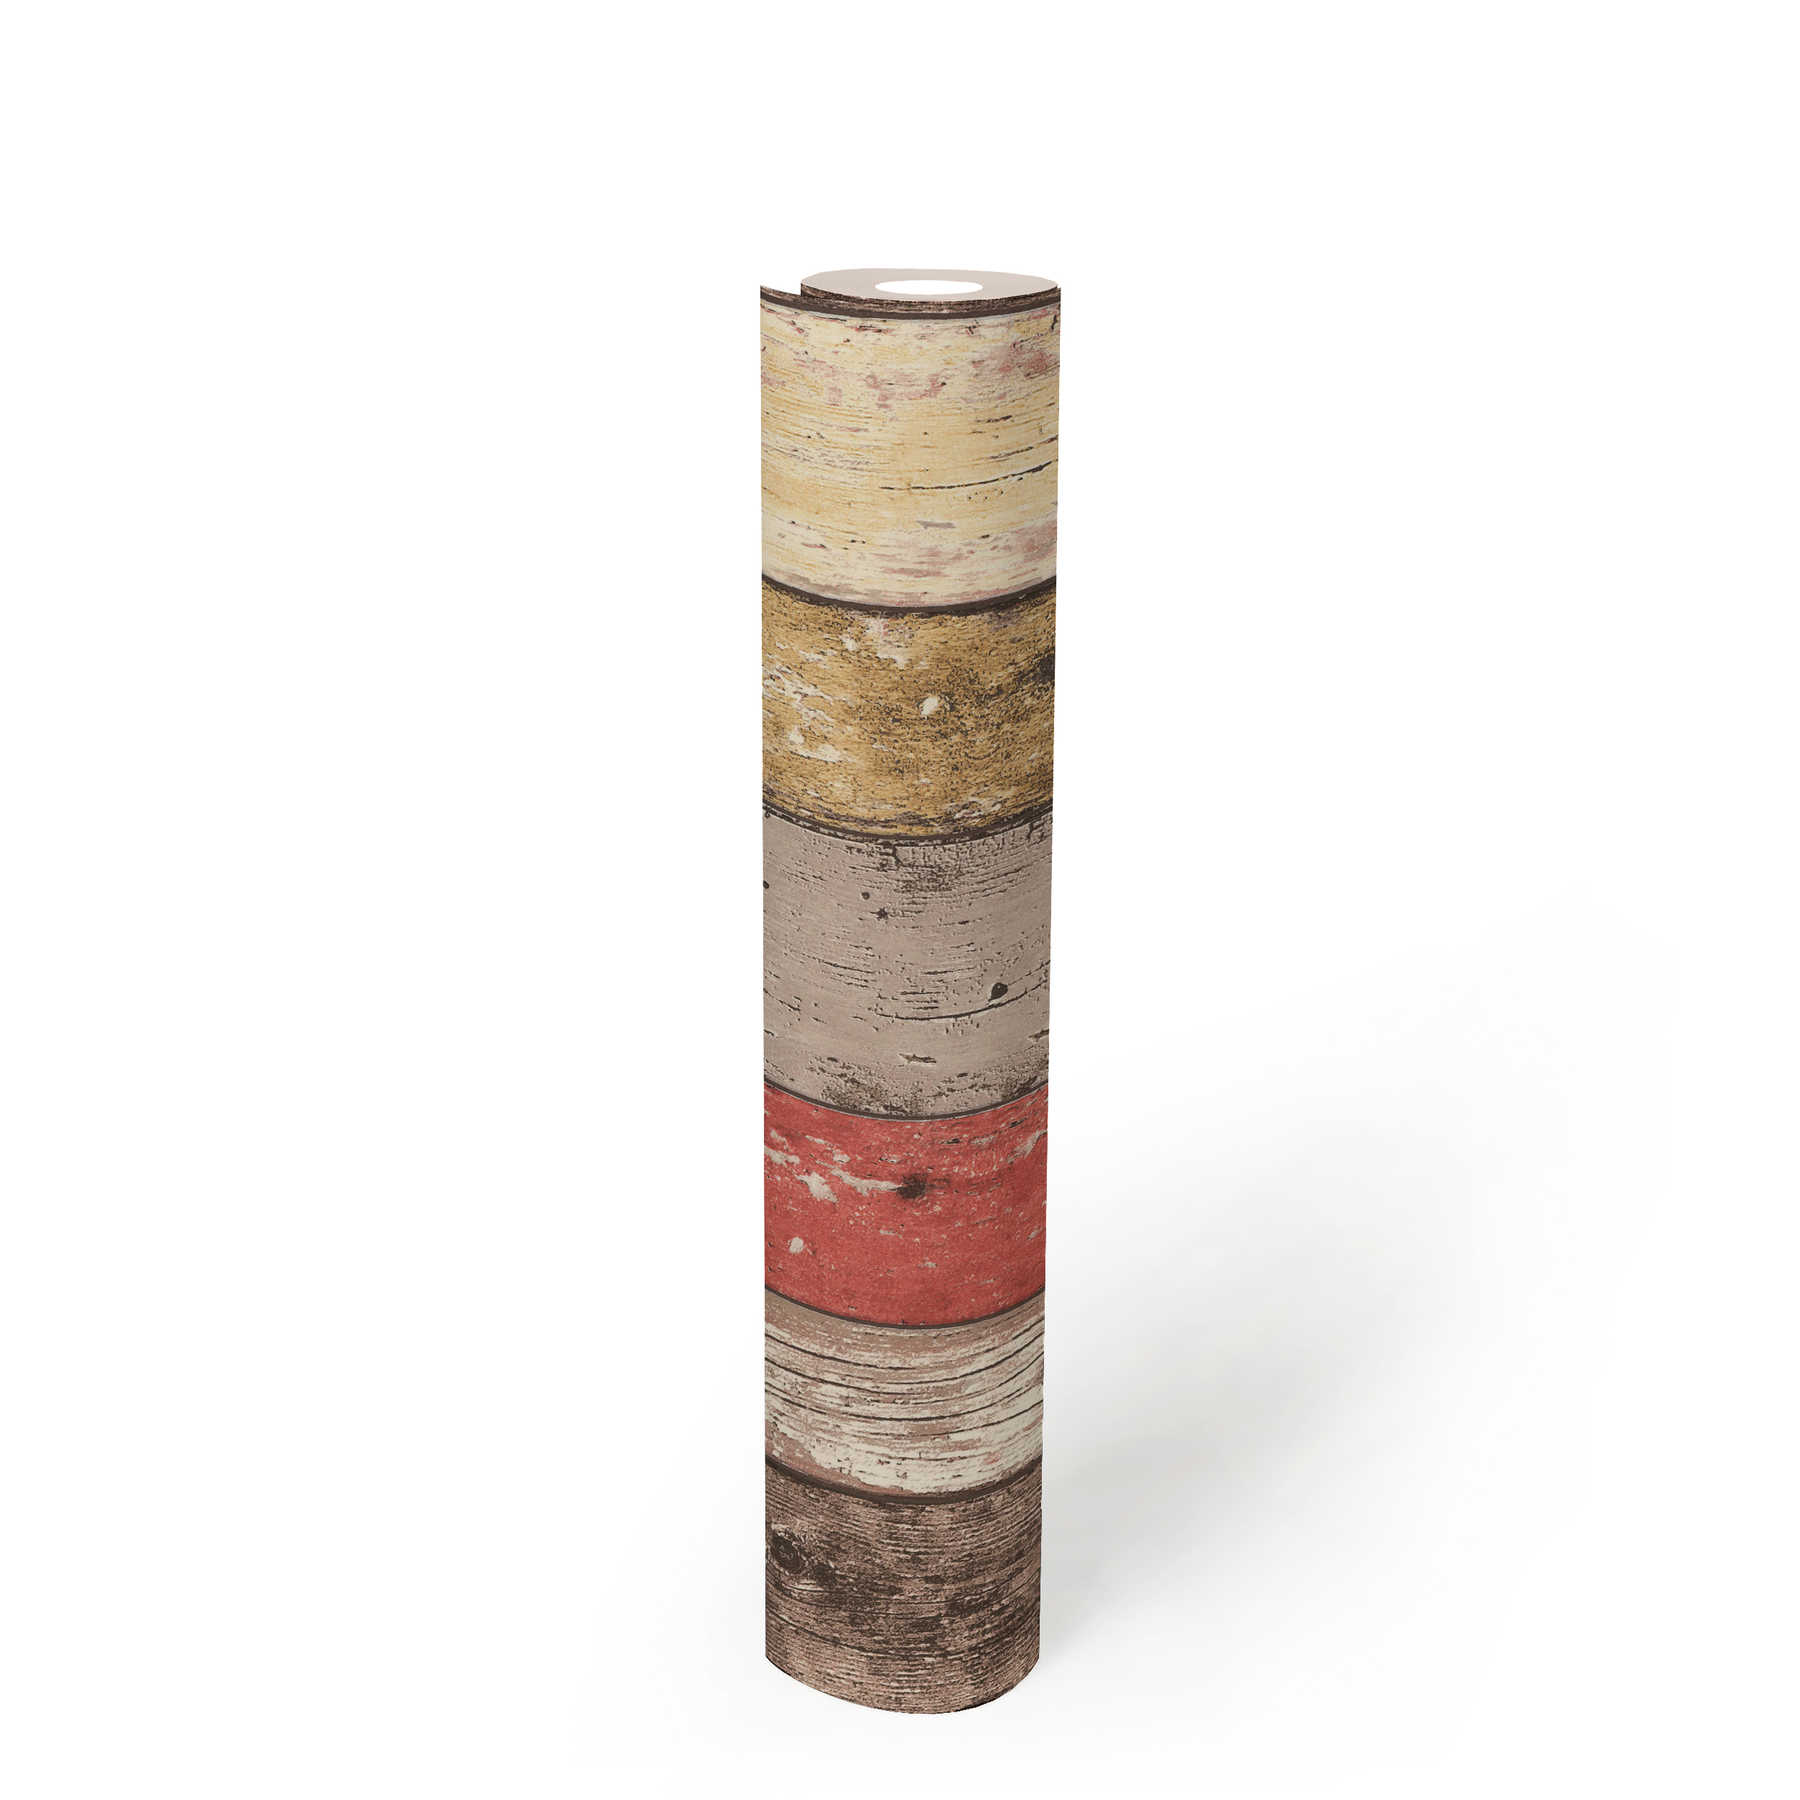             Holztapete mit Used Optik für Vintage & Landhausstil – Braun, Rot, Beige
        